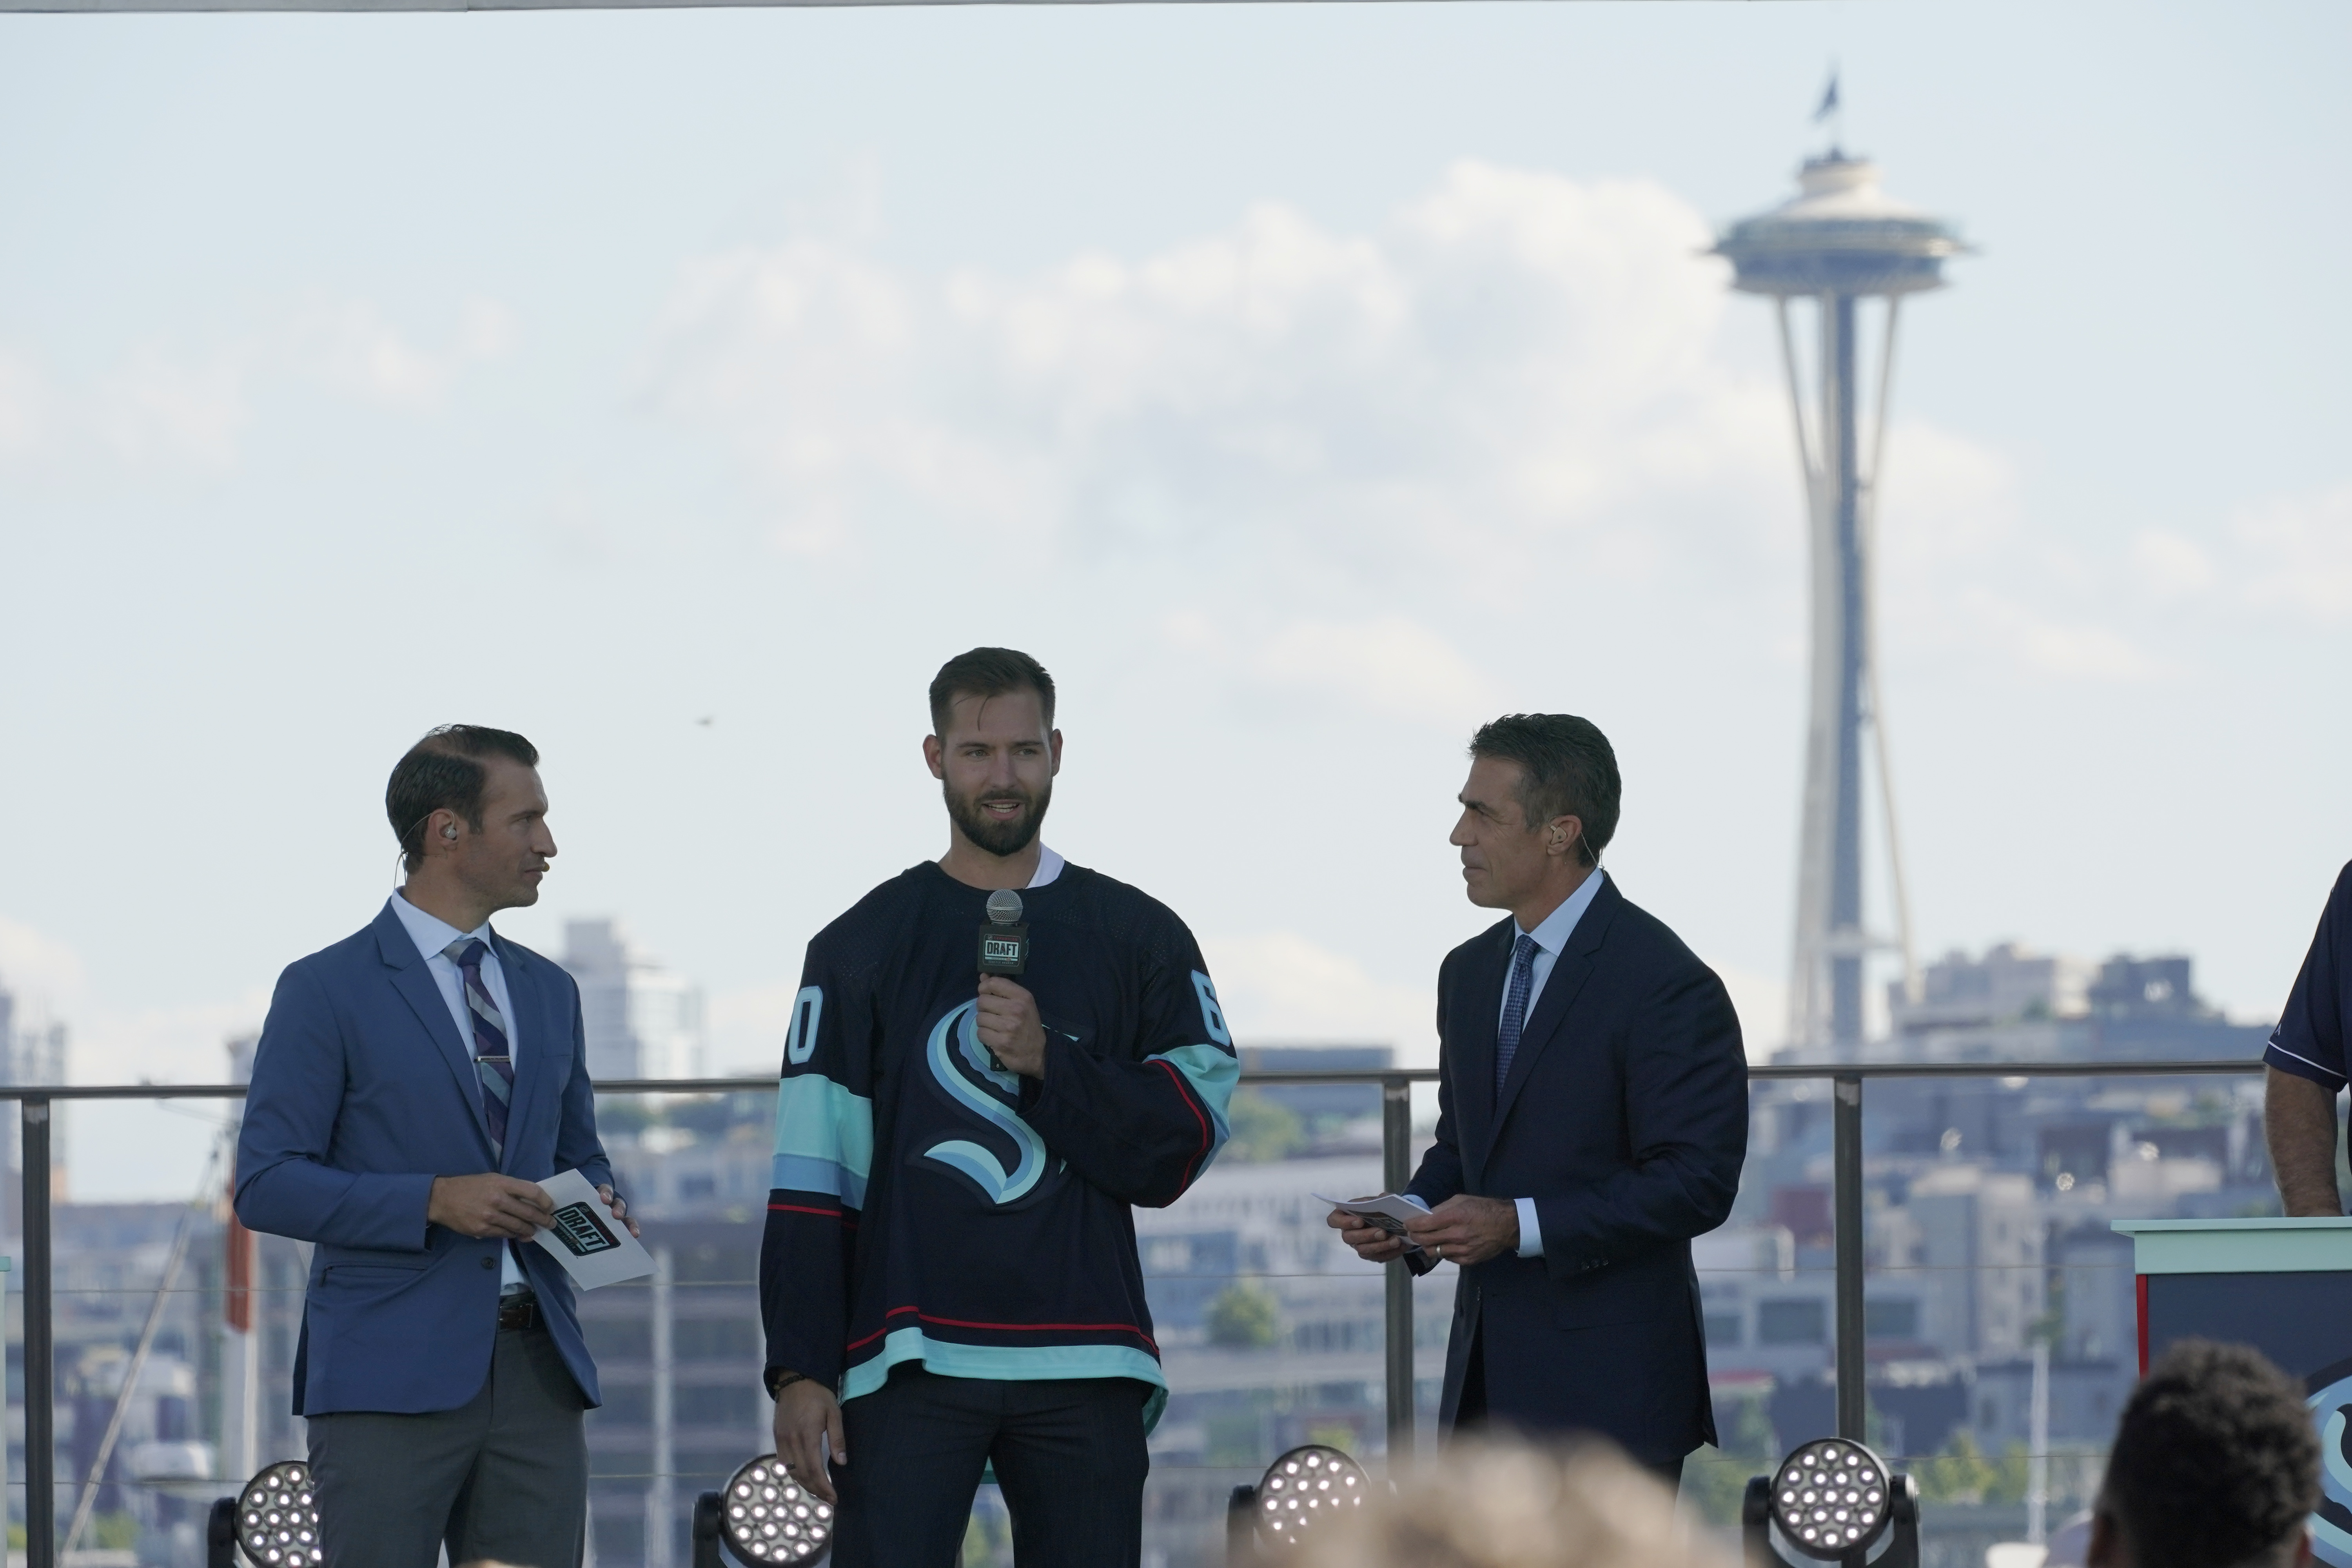 Seattle Kraken expansion draft showcases city, lacks drama